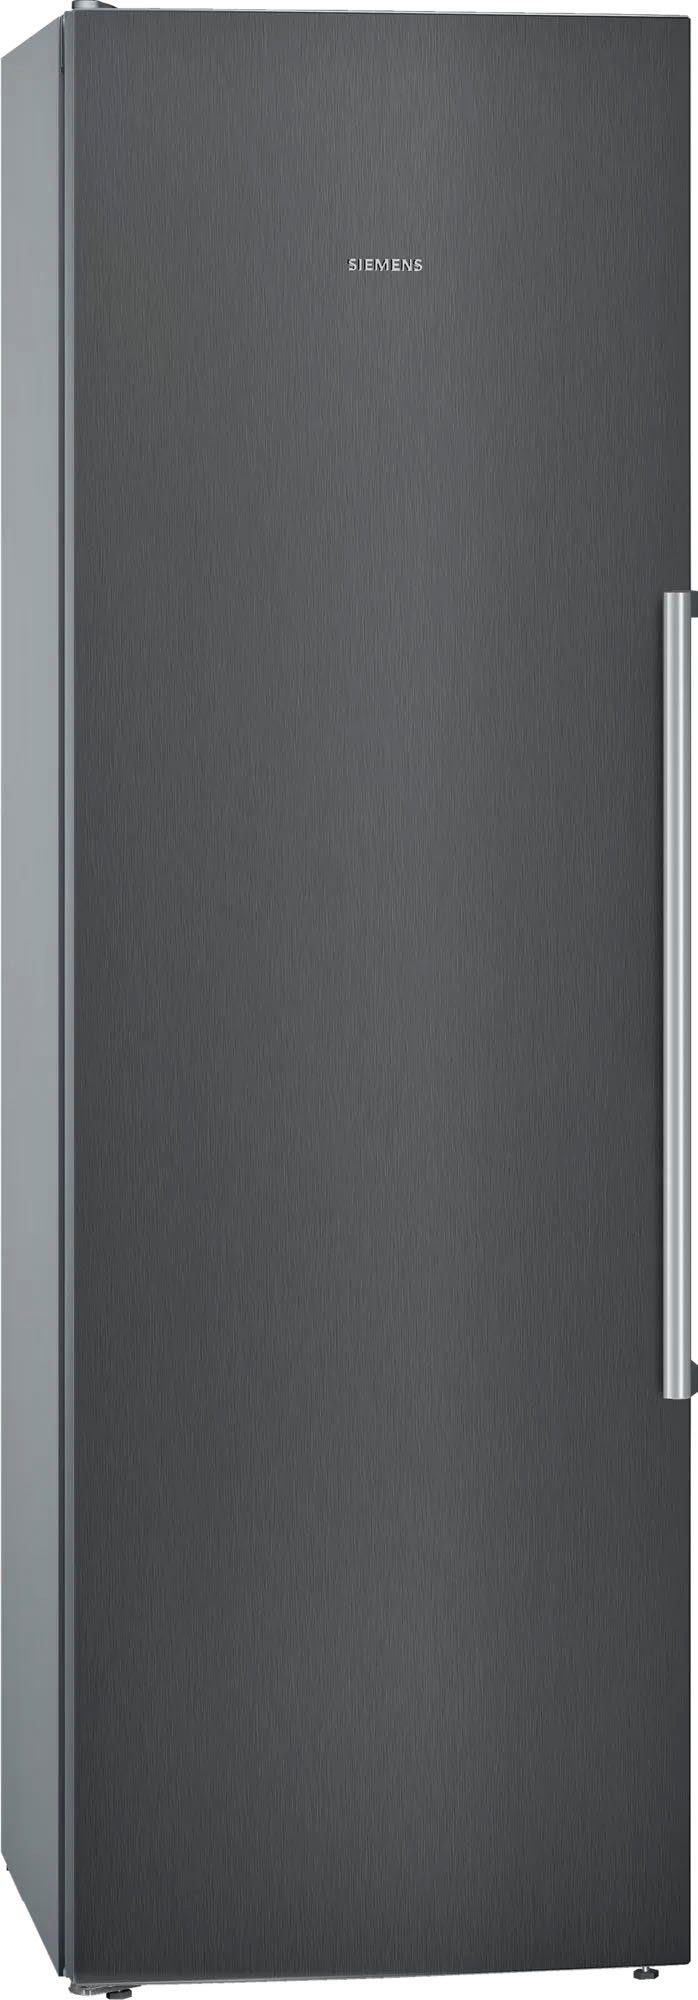 SIEMENS Kühlschrank iQ500 KS36VAXEP, 186 cm hoch, 60 cm breit online kaufen  | OTTO